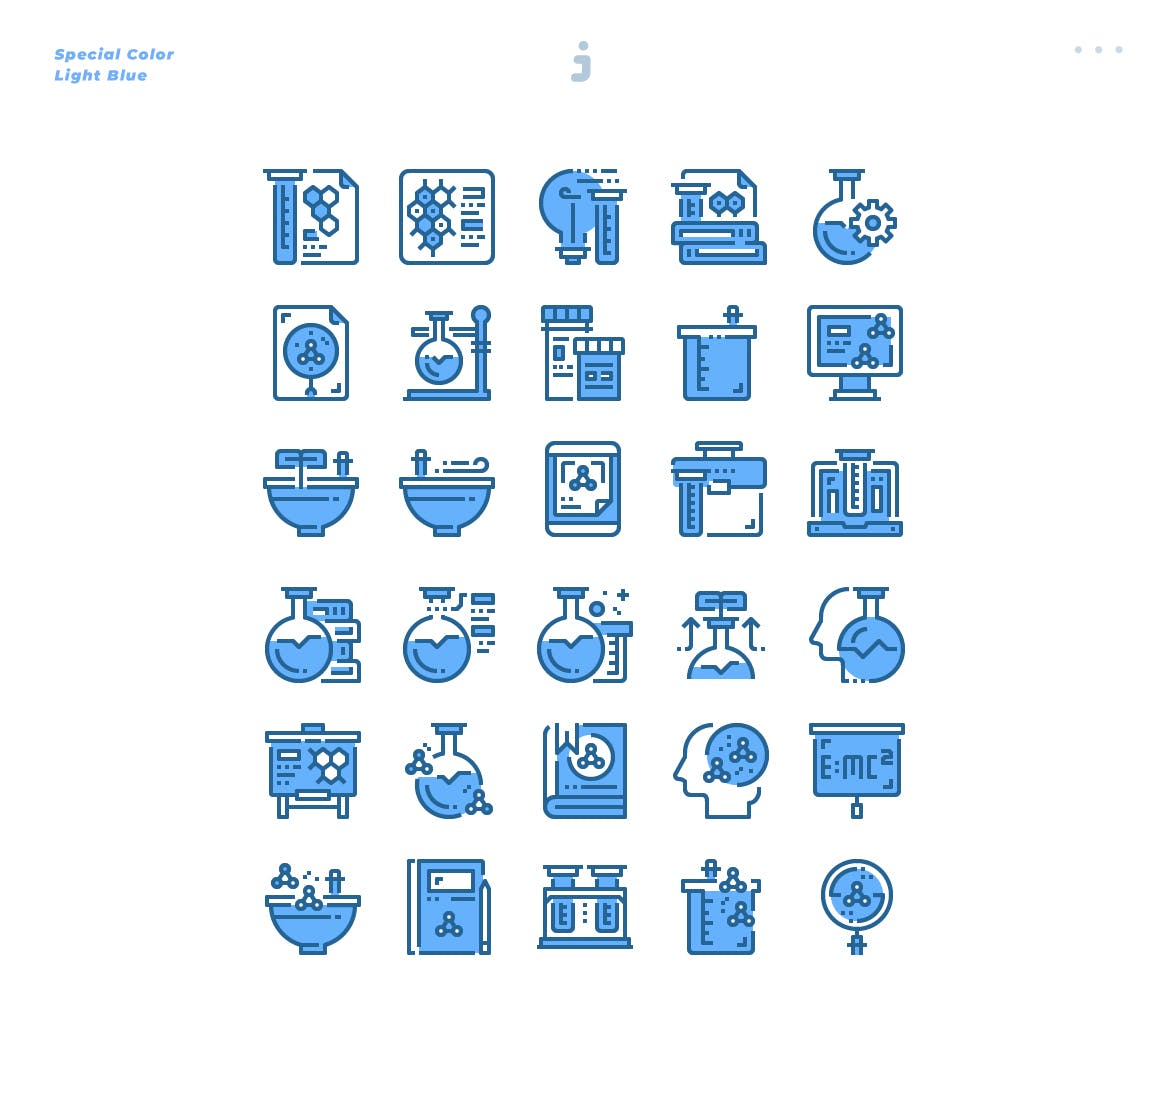 30个科学实验数据创意概念化图标源文件下载30 Science Icons Light Blue插图2